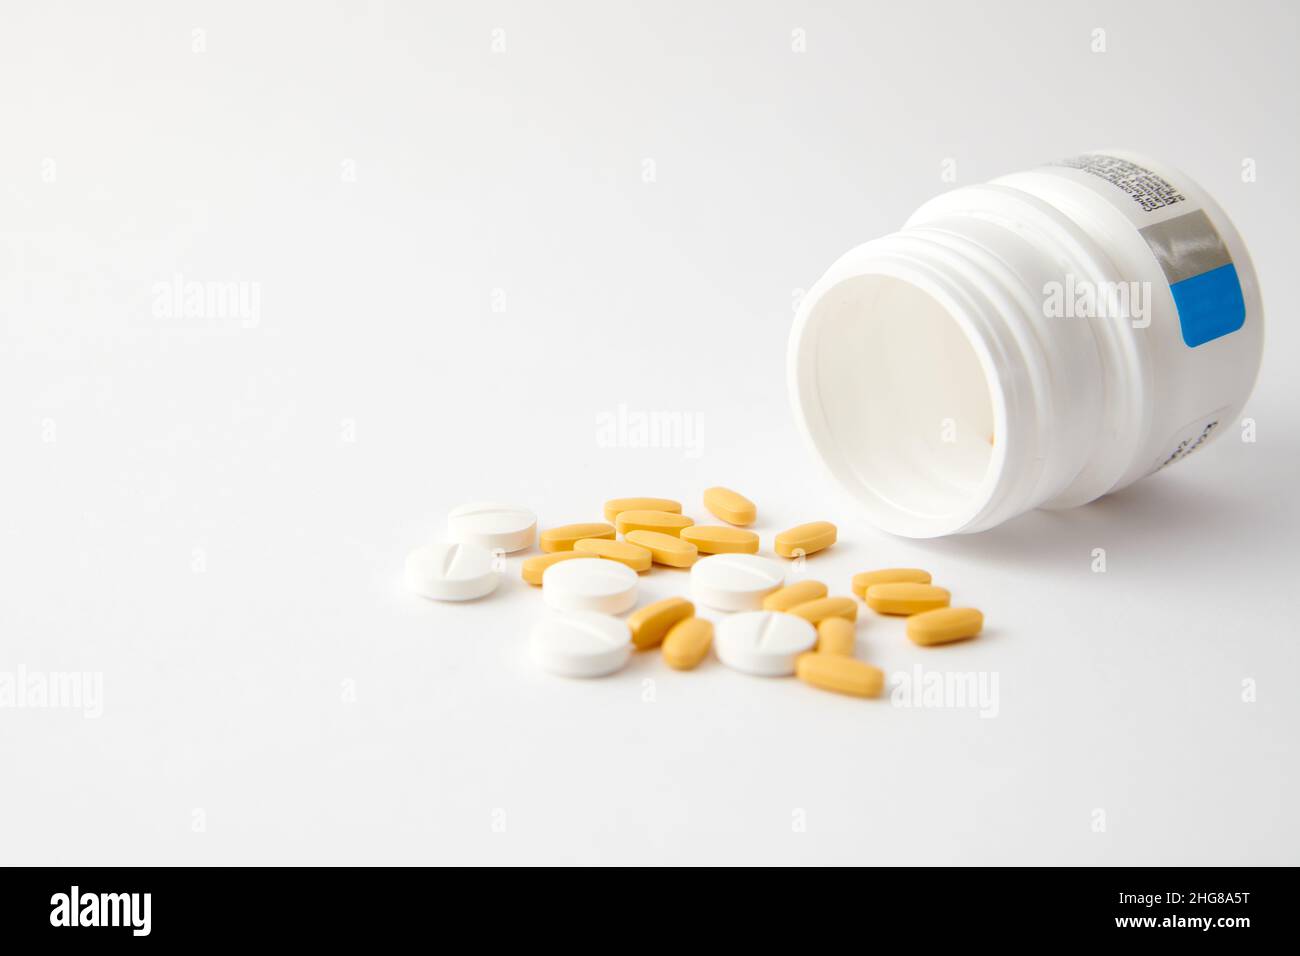 Un closeup di pillole bianche e gialle goccia fuori il flacone della pillola sulla superficie bianca Foto Stock